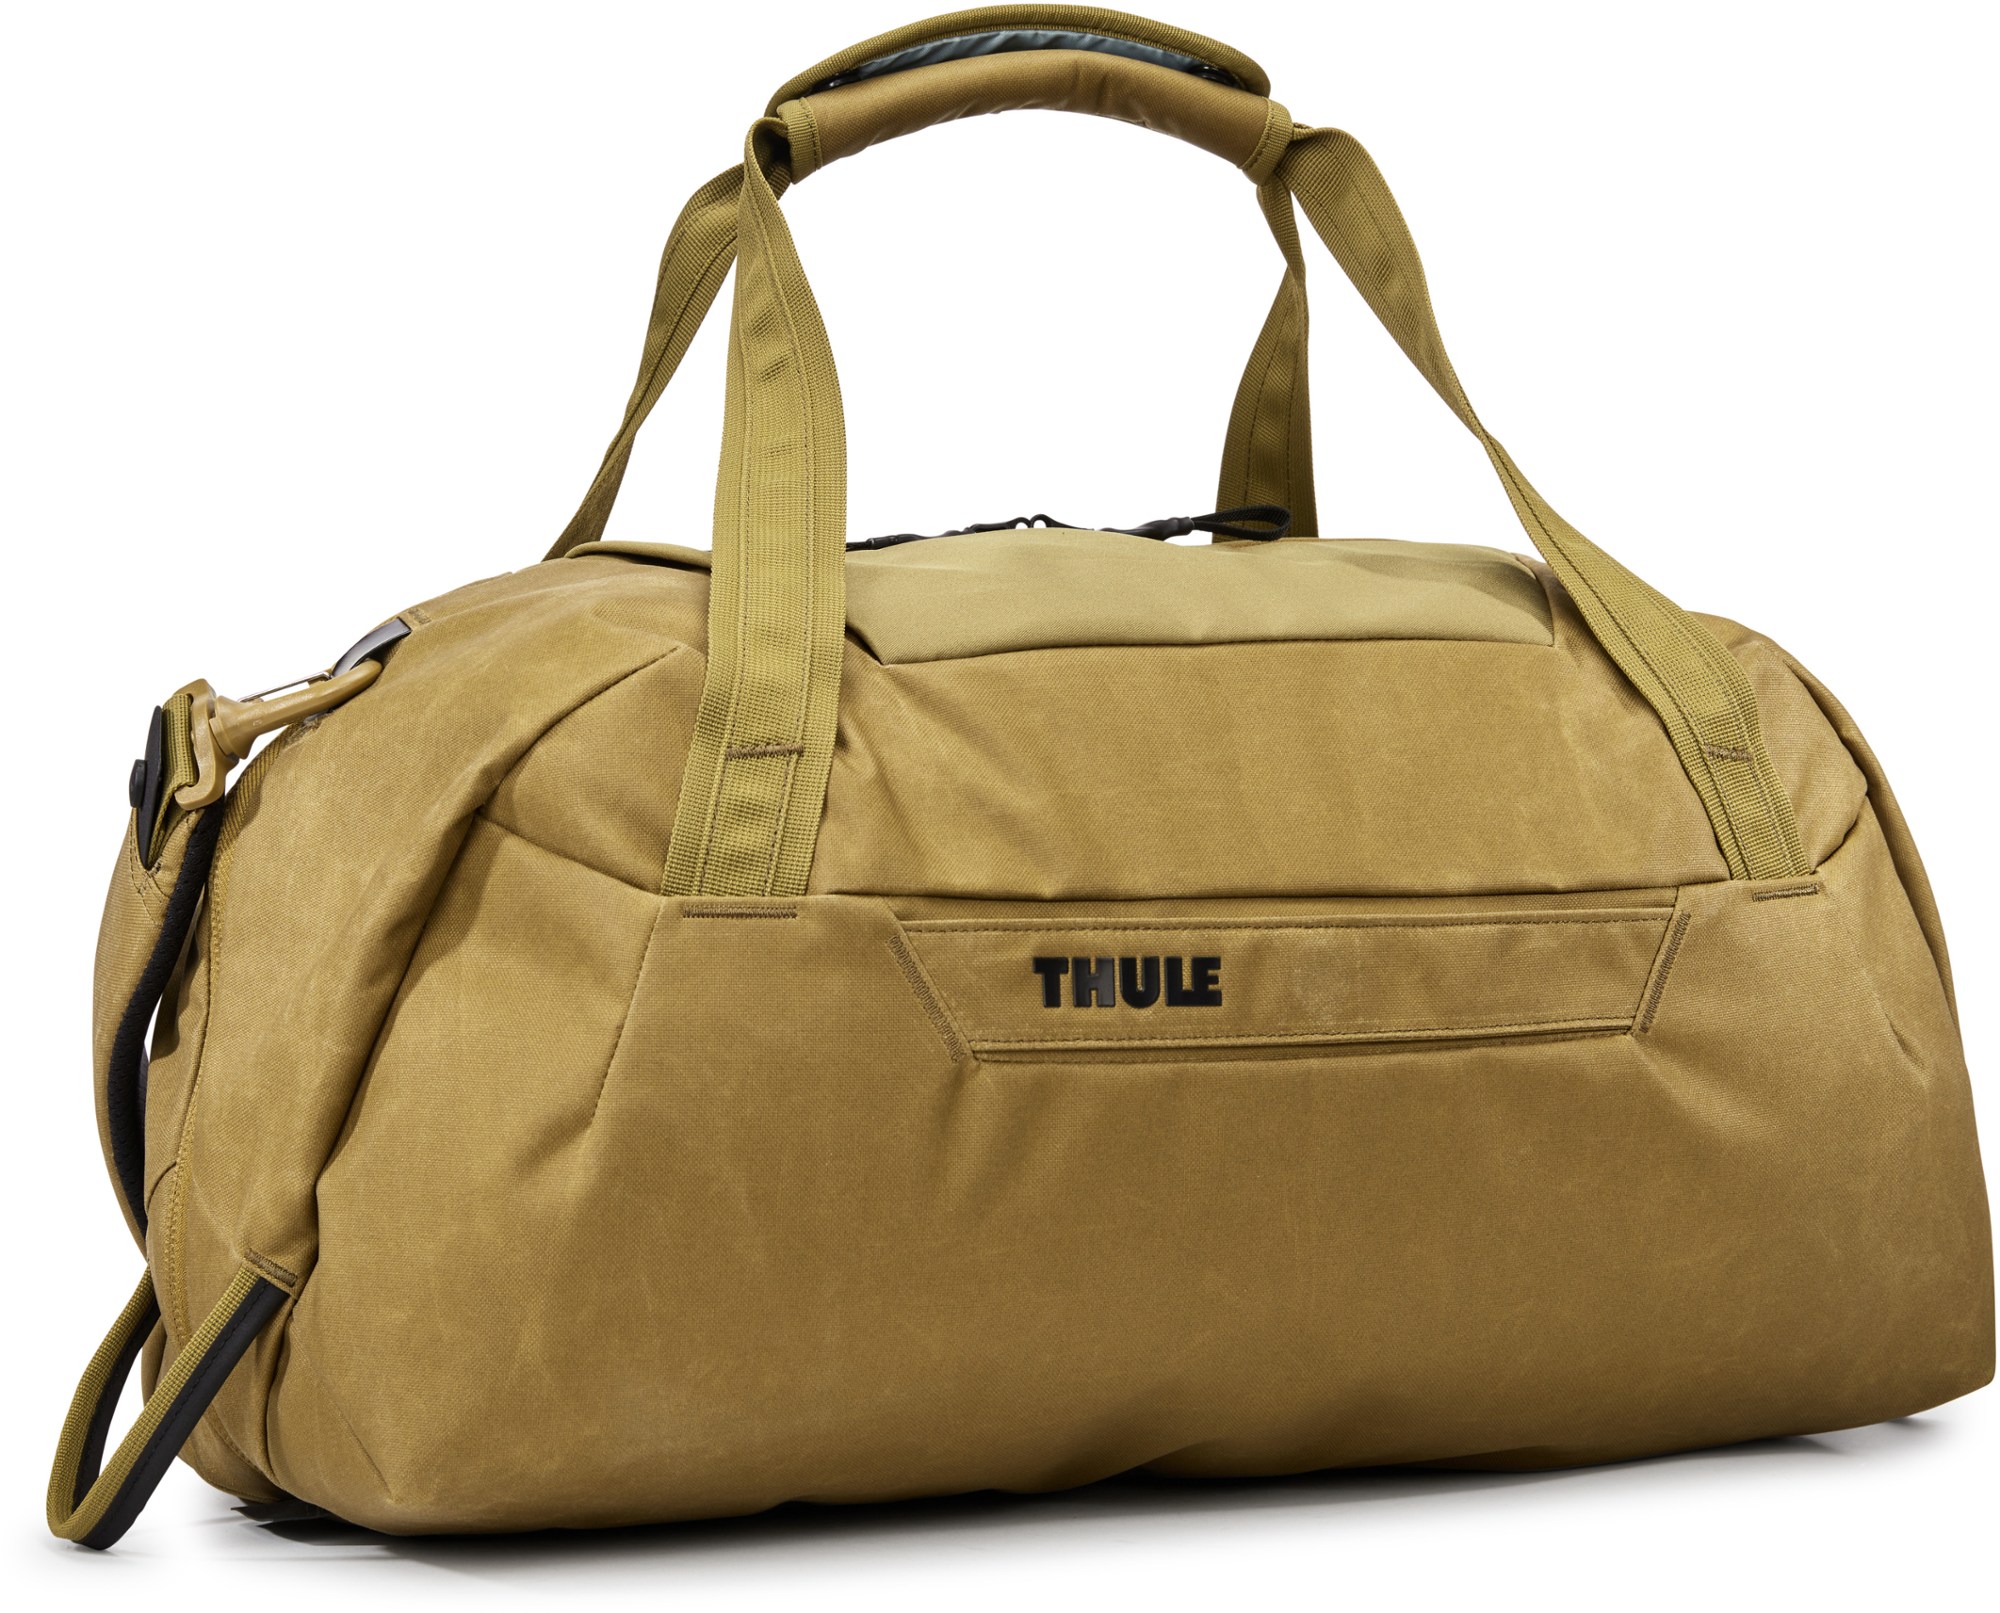 Спортивная сумка Aion - 35 л Thule, коричневый цена и фото